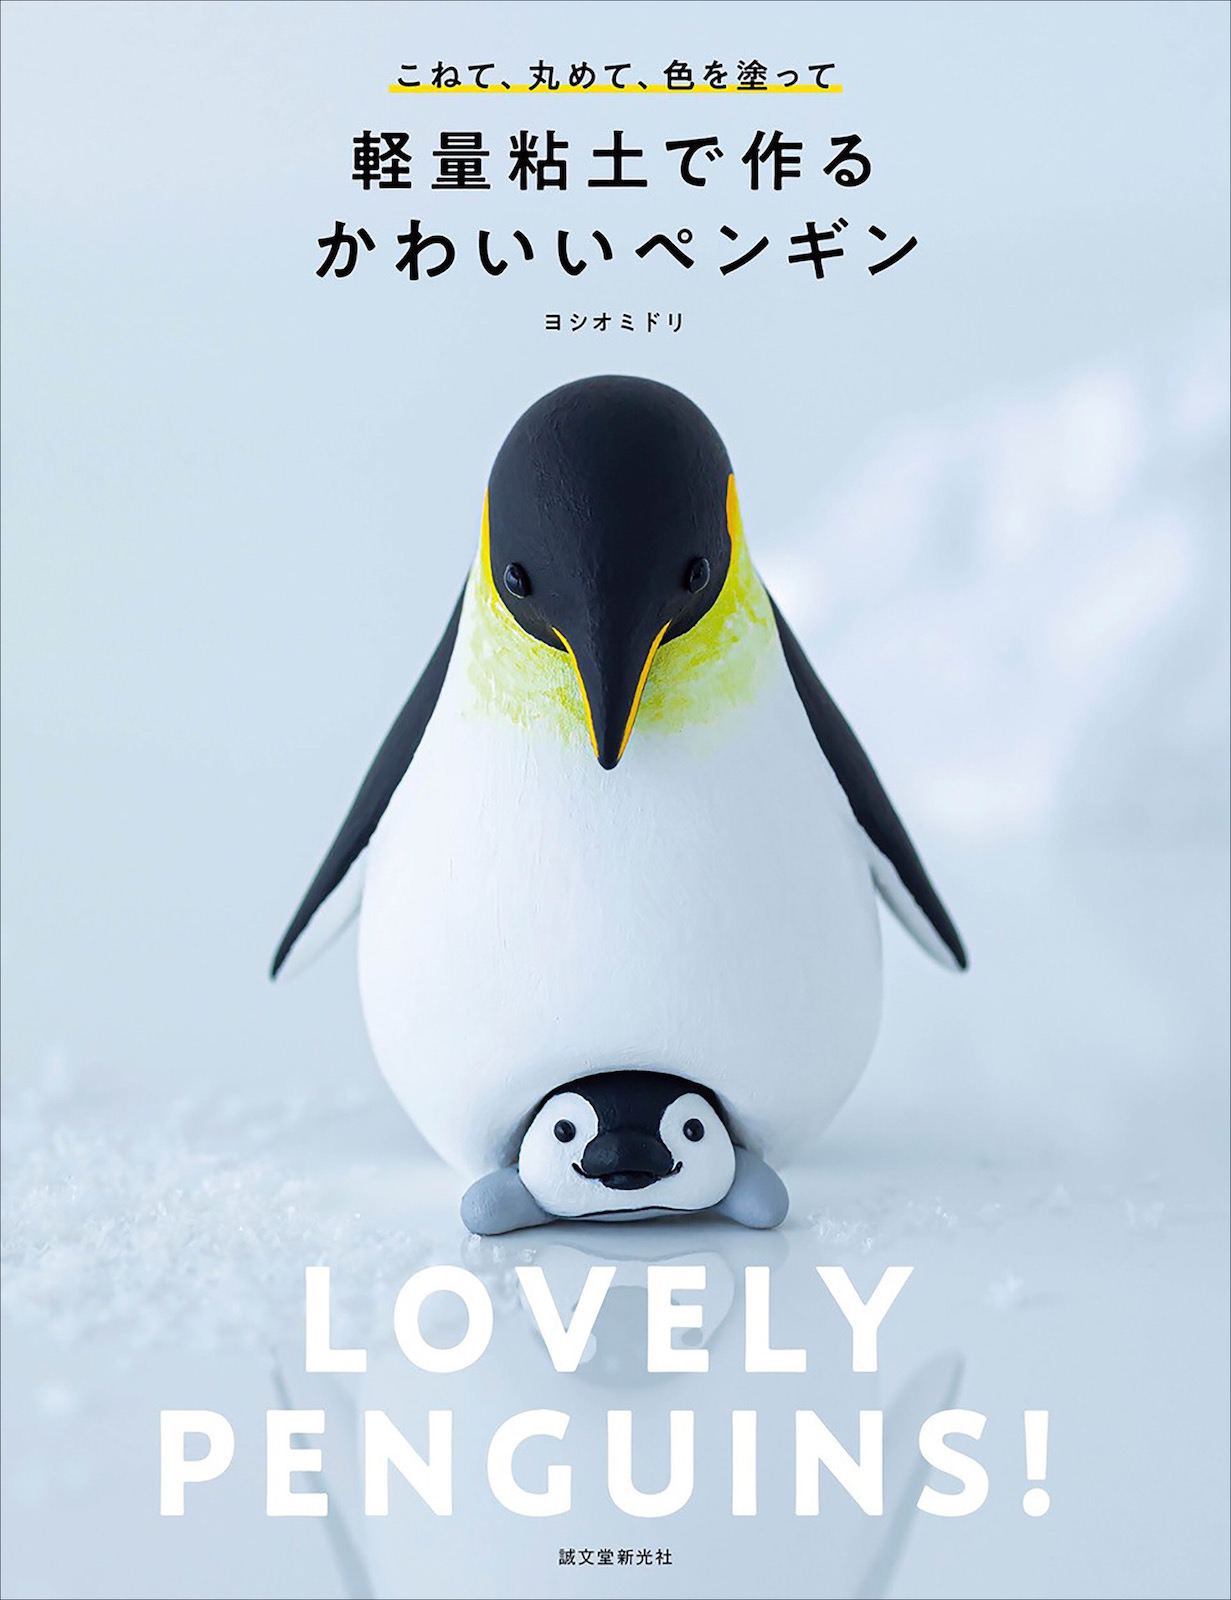 誠文堂新光社 書籍 軽量粘土で作るかわいいペンギン を刊行 7月10日 動物のリアルを伝えるwebメディア Reanimal